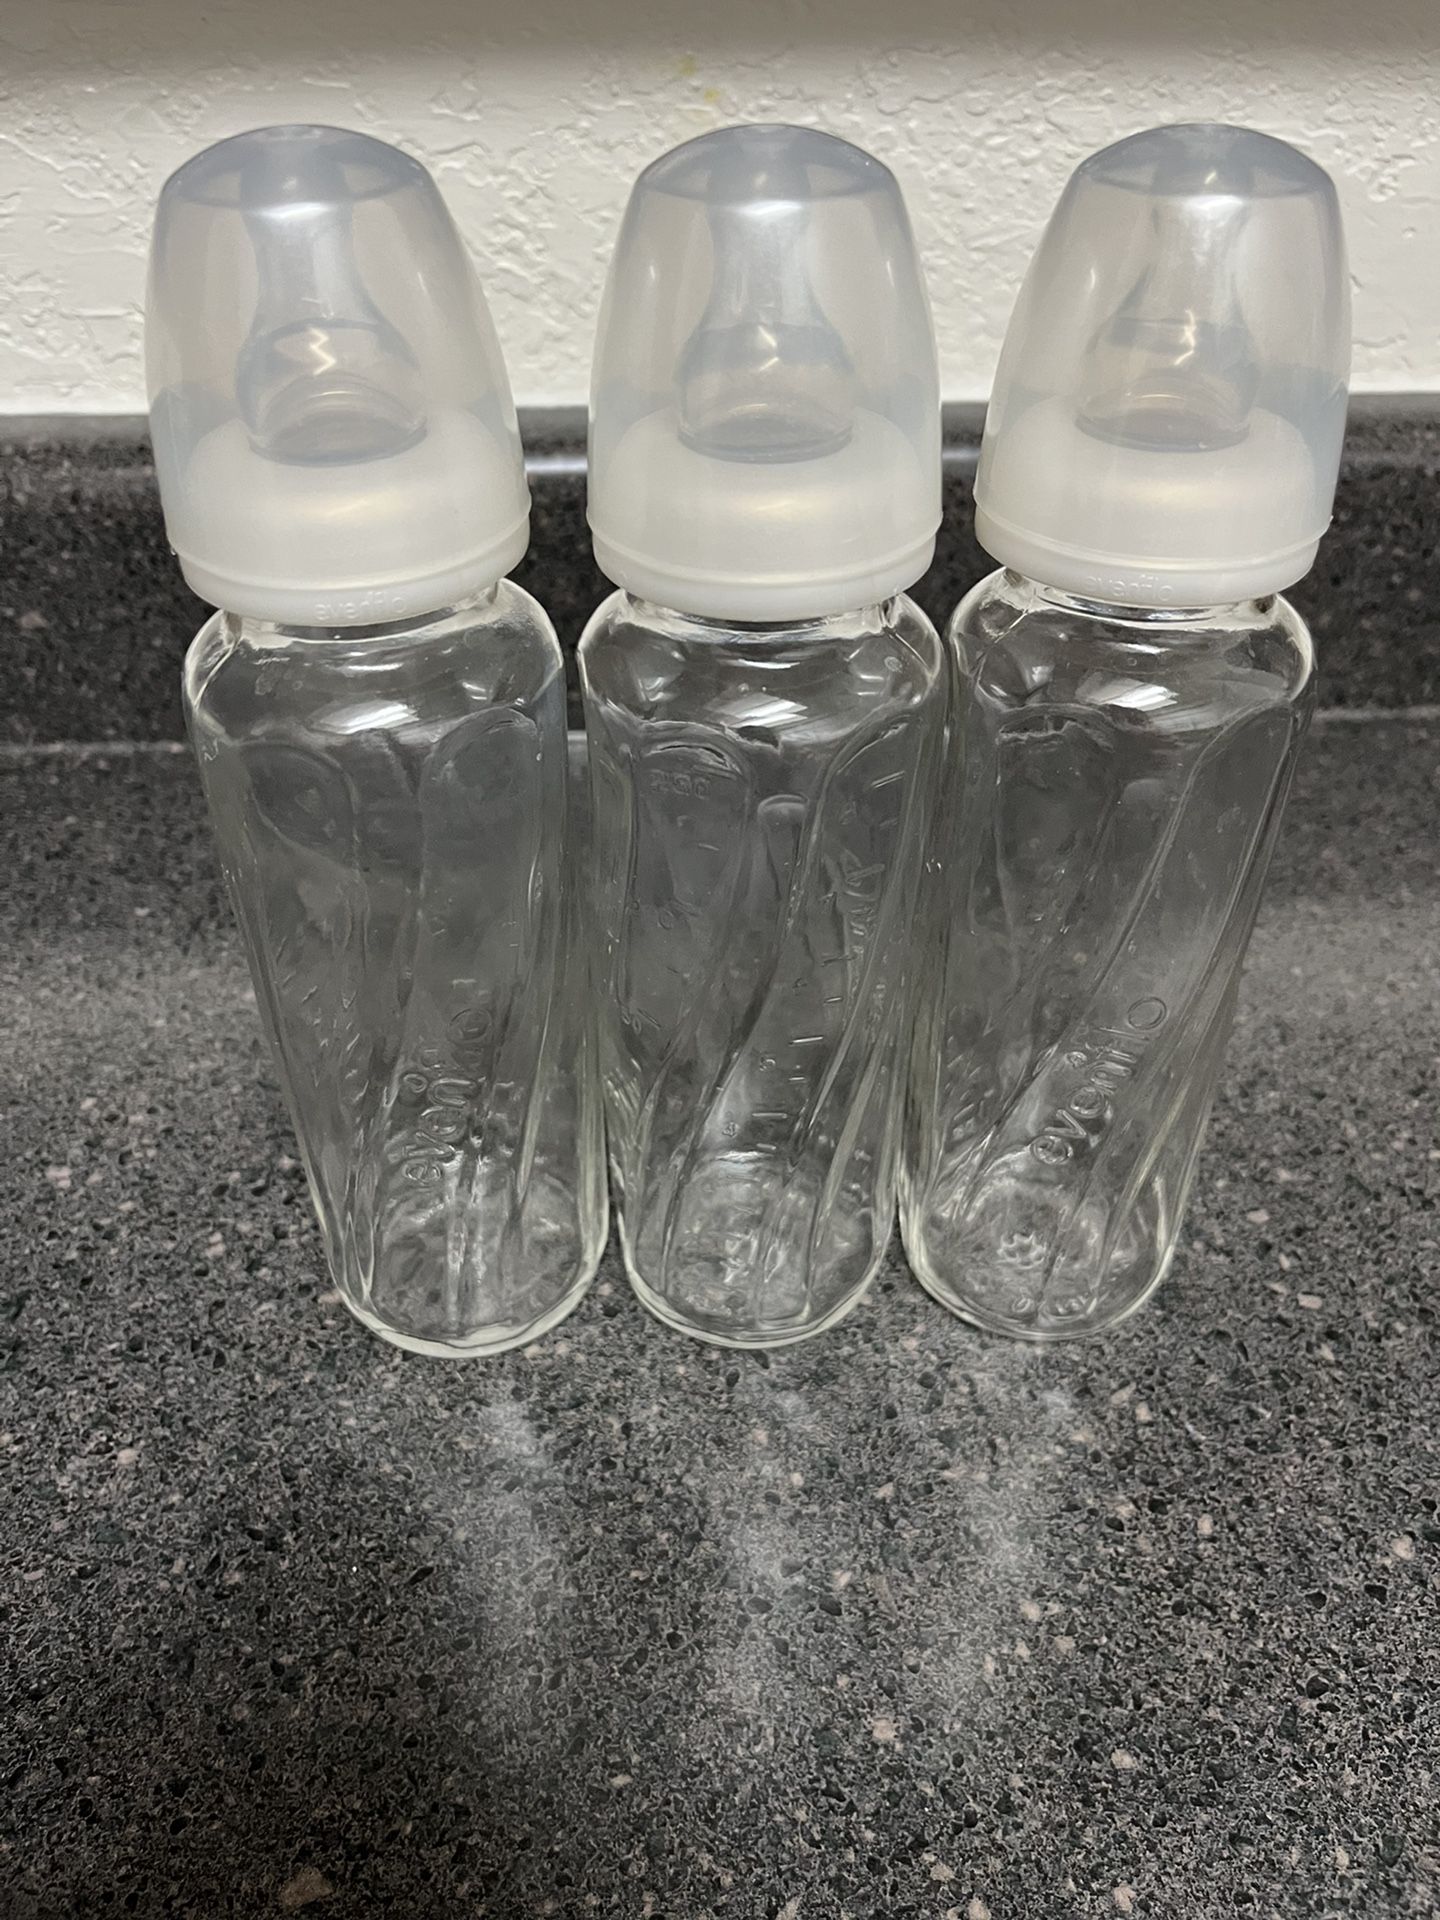 Evenflo Classic Glass Bottles 